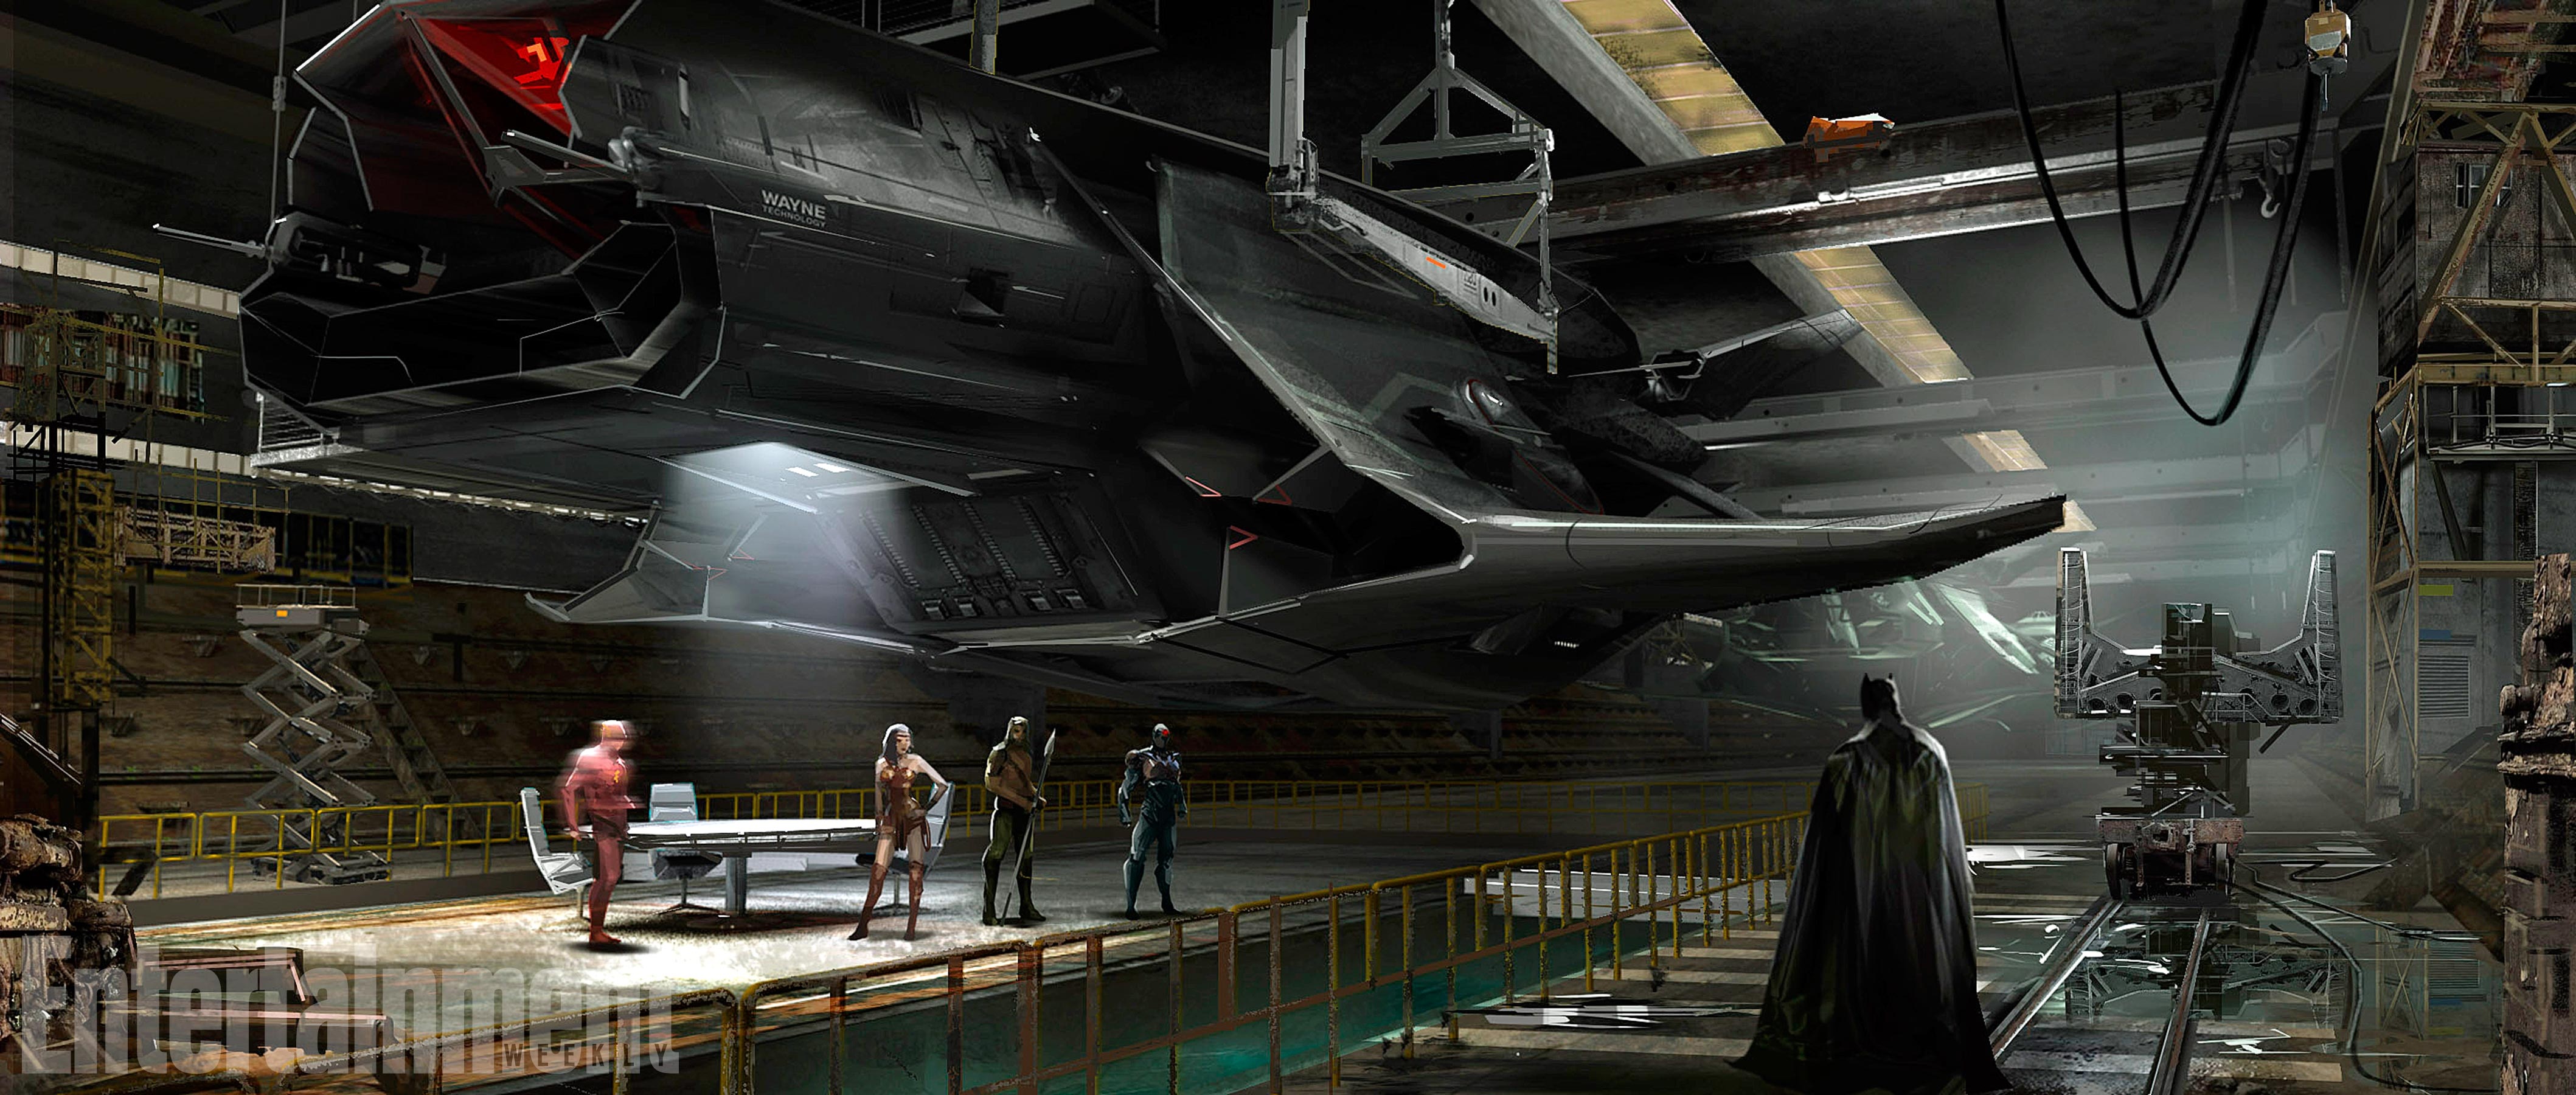 电影《正义联盟》曝概念图 蝙蝠侠造巨型飞行器